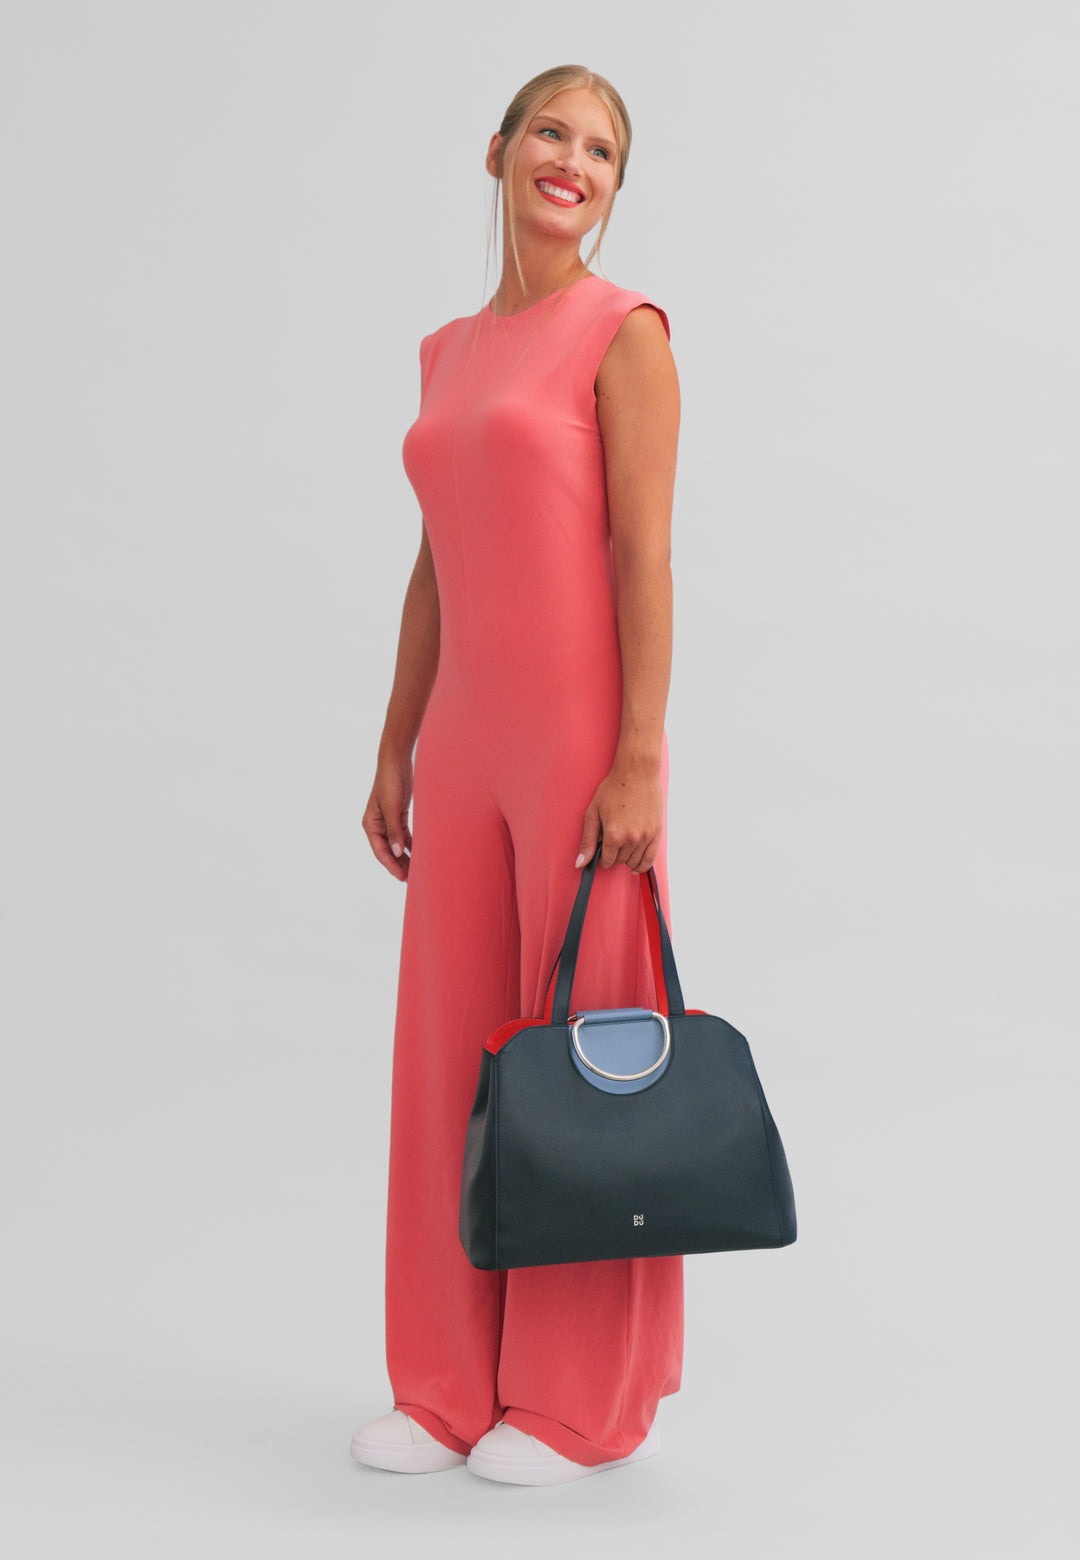 DuDu 女式大号购物袋,意大利制造的彩色皮革,手袋,肩袋,双手柄和手柄